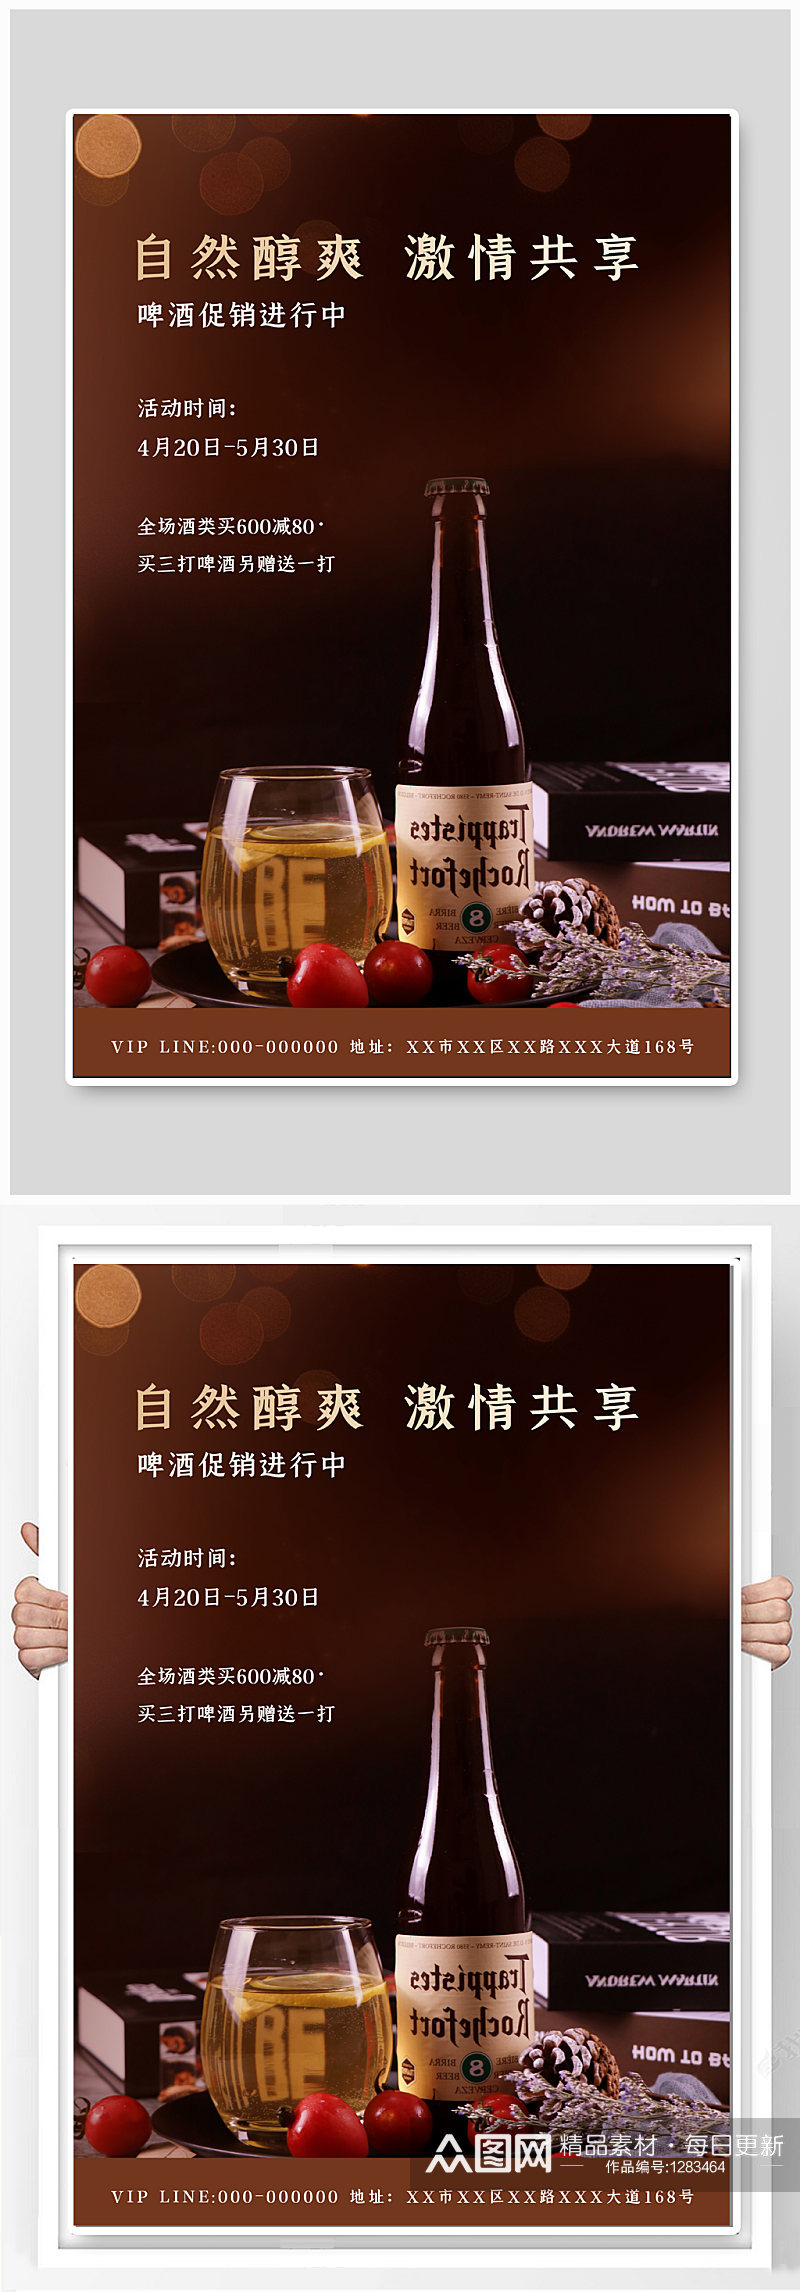 啤酒文化宣传海报素材